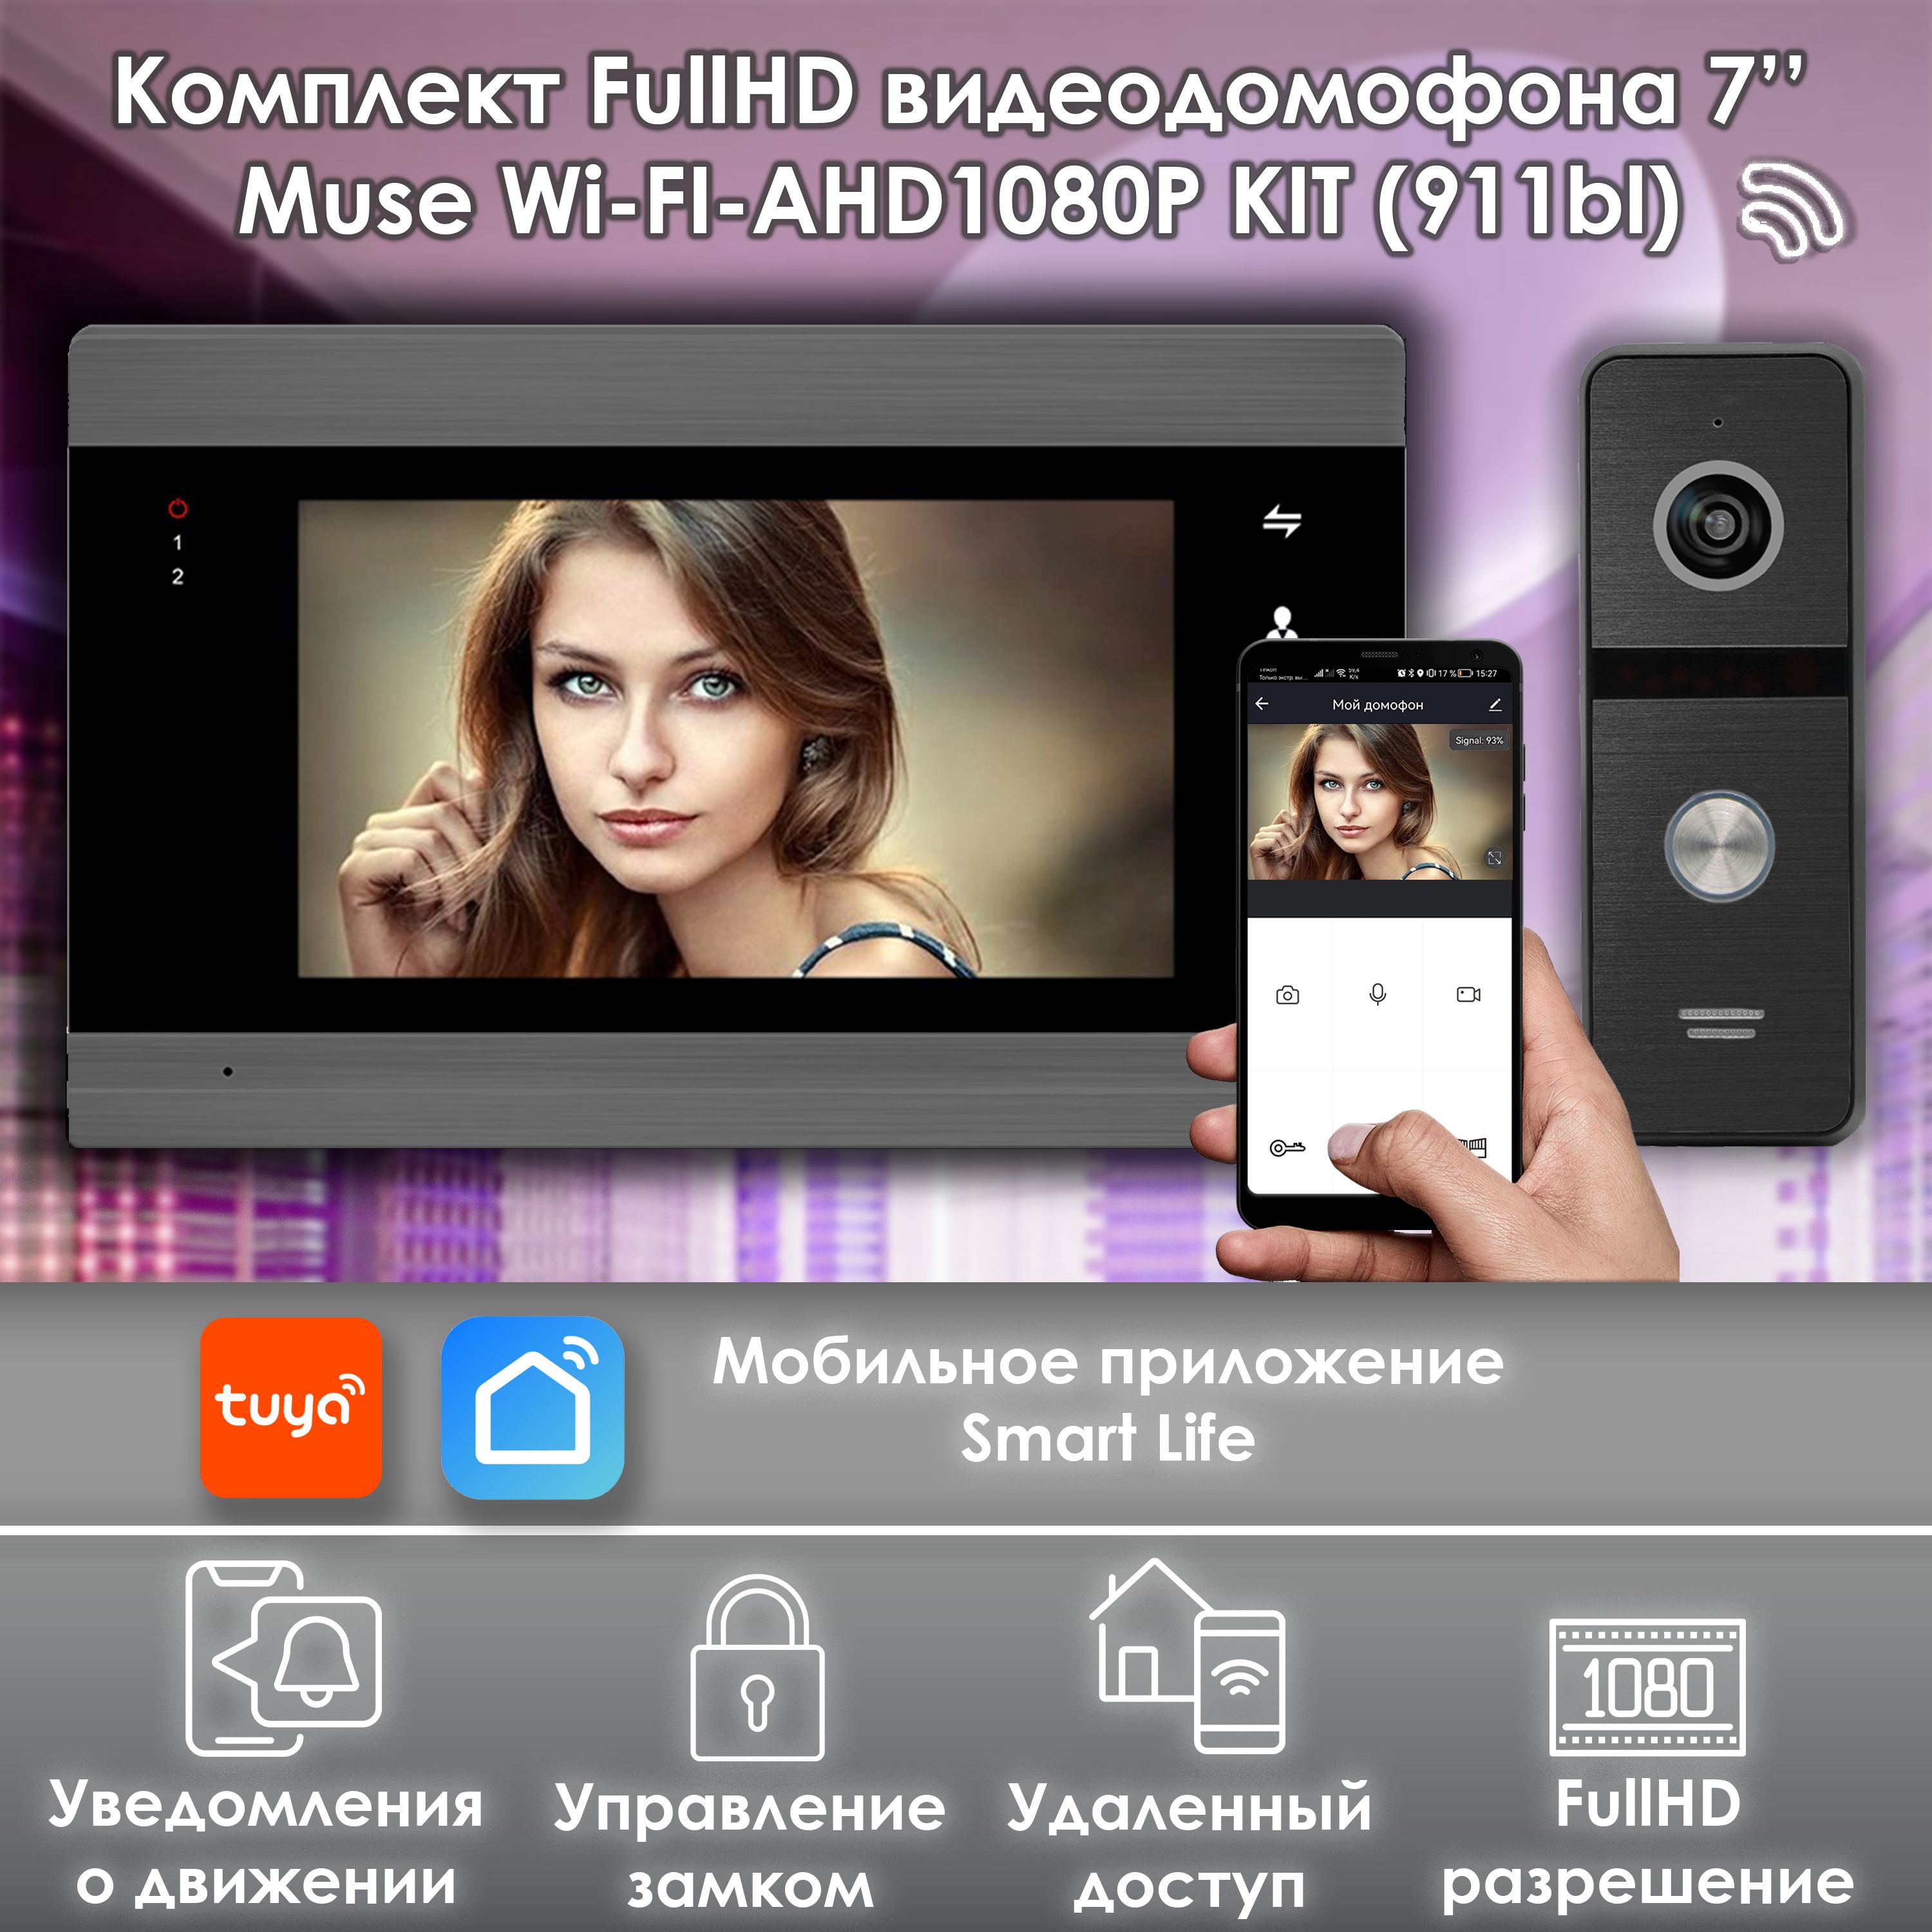 комплект видеодомофона alfavision vika kit wifi 310sl Комплект видеодомофона Alfavision MUSE WIFI-KIT (911bl) Full HD 7 дюймов